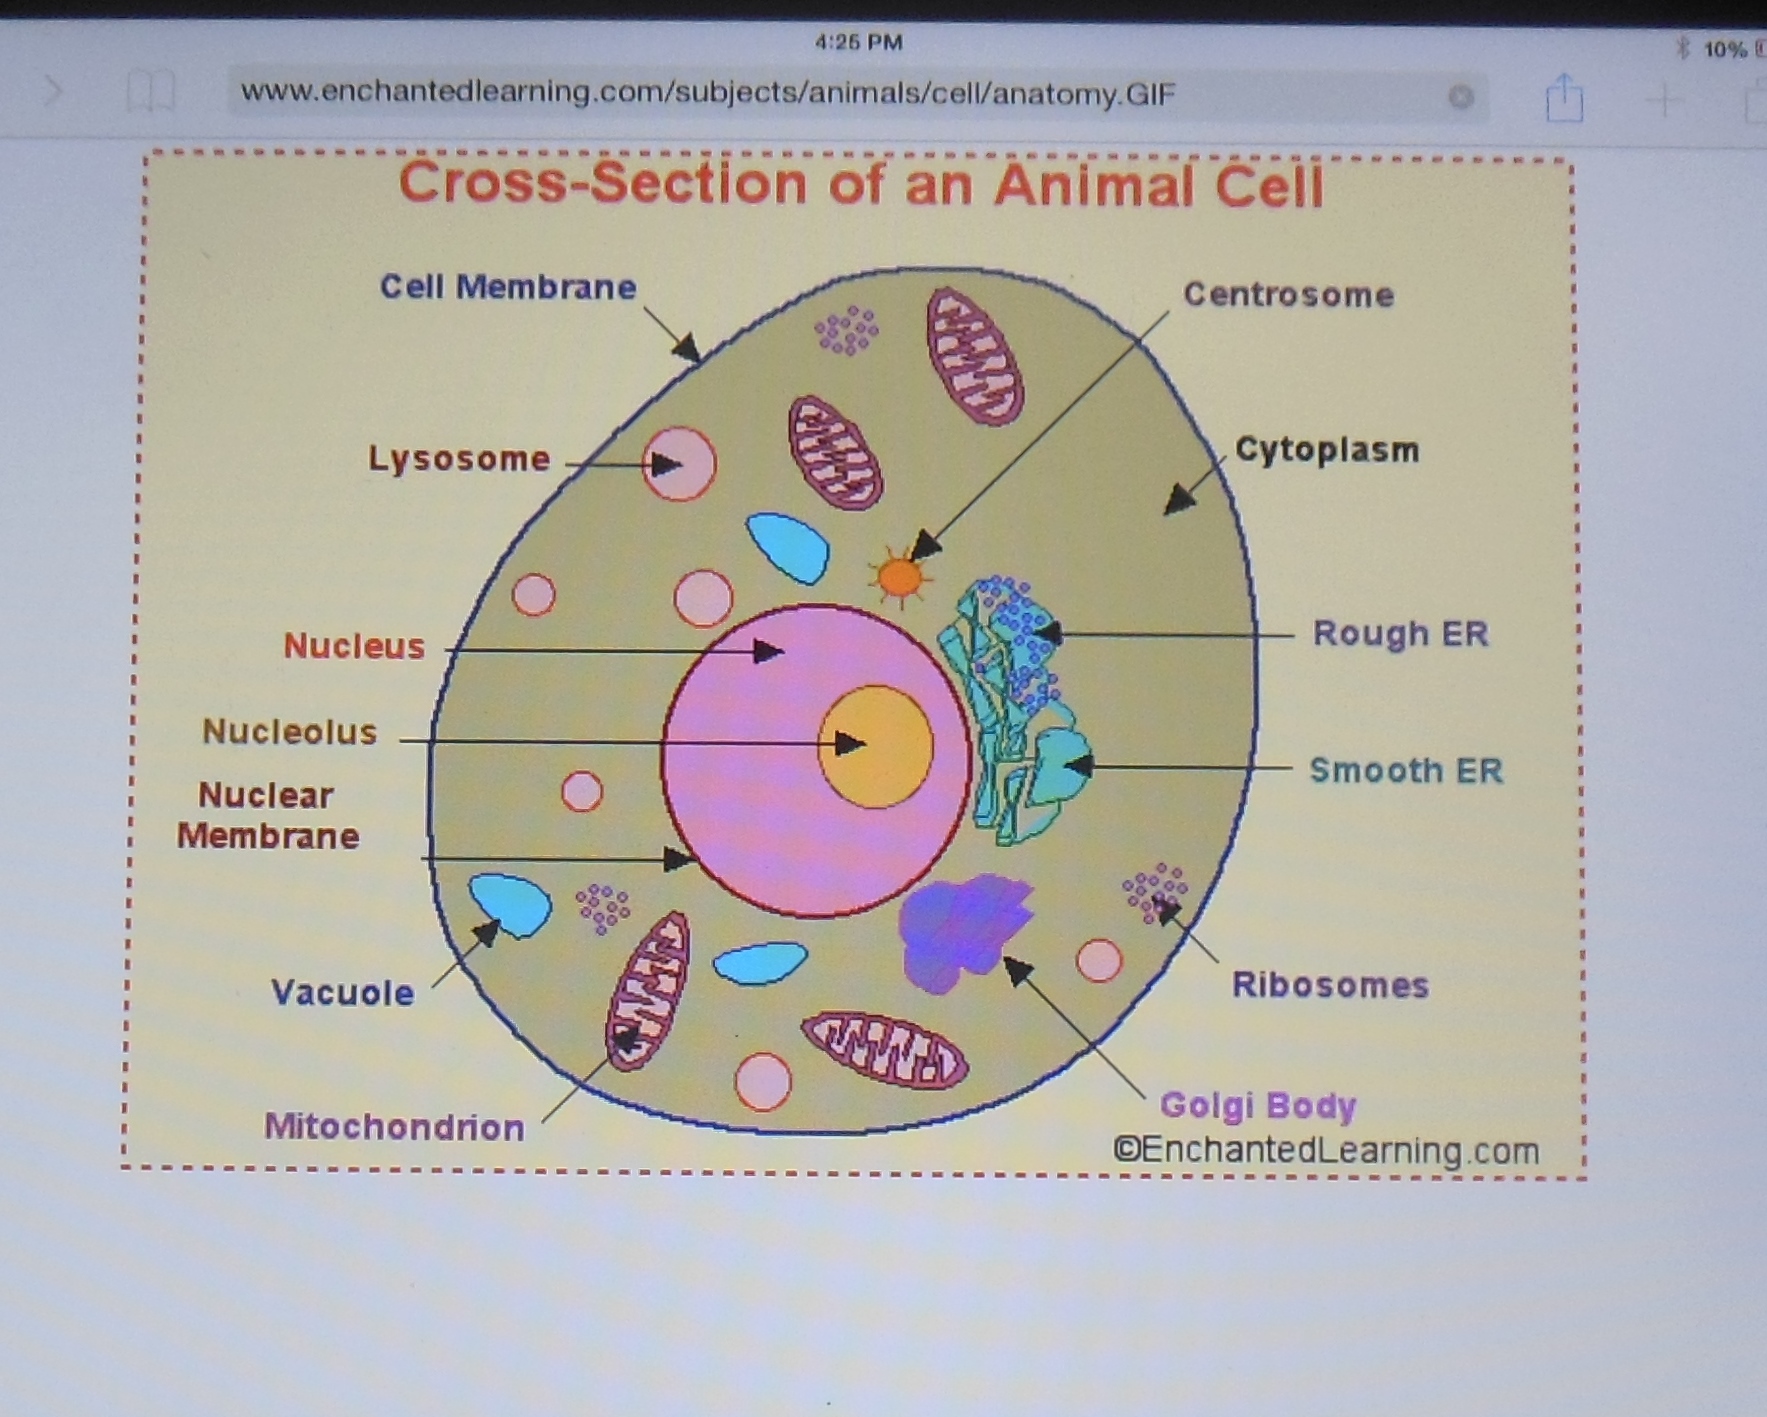 animal cell model 7th grade